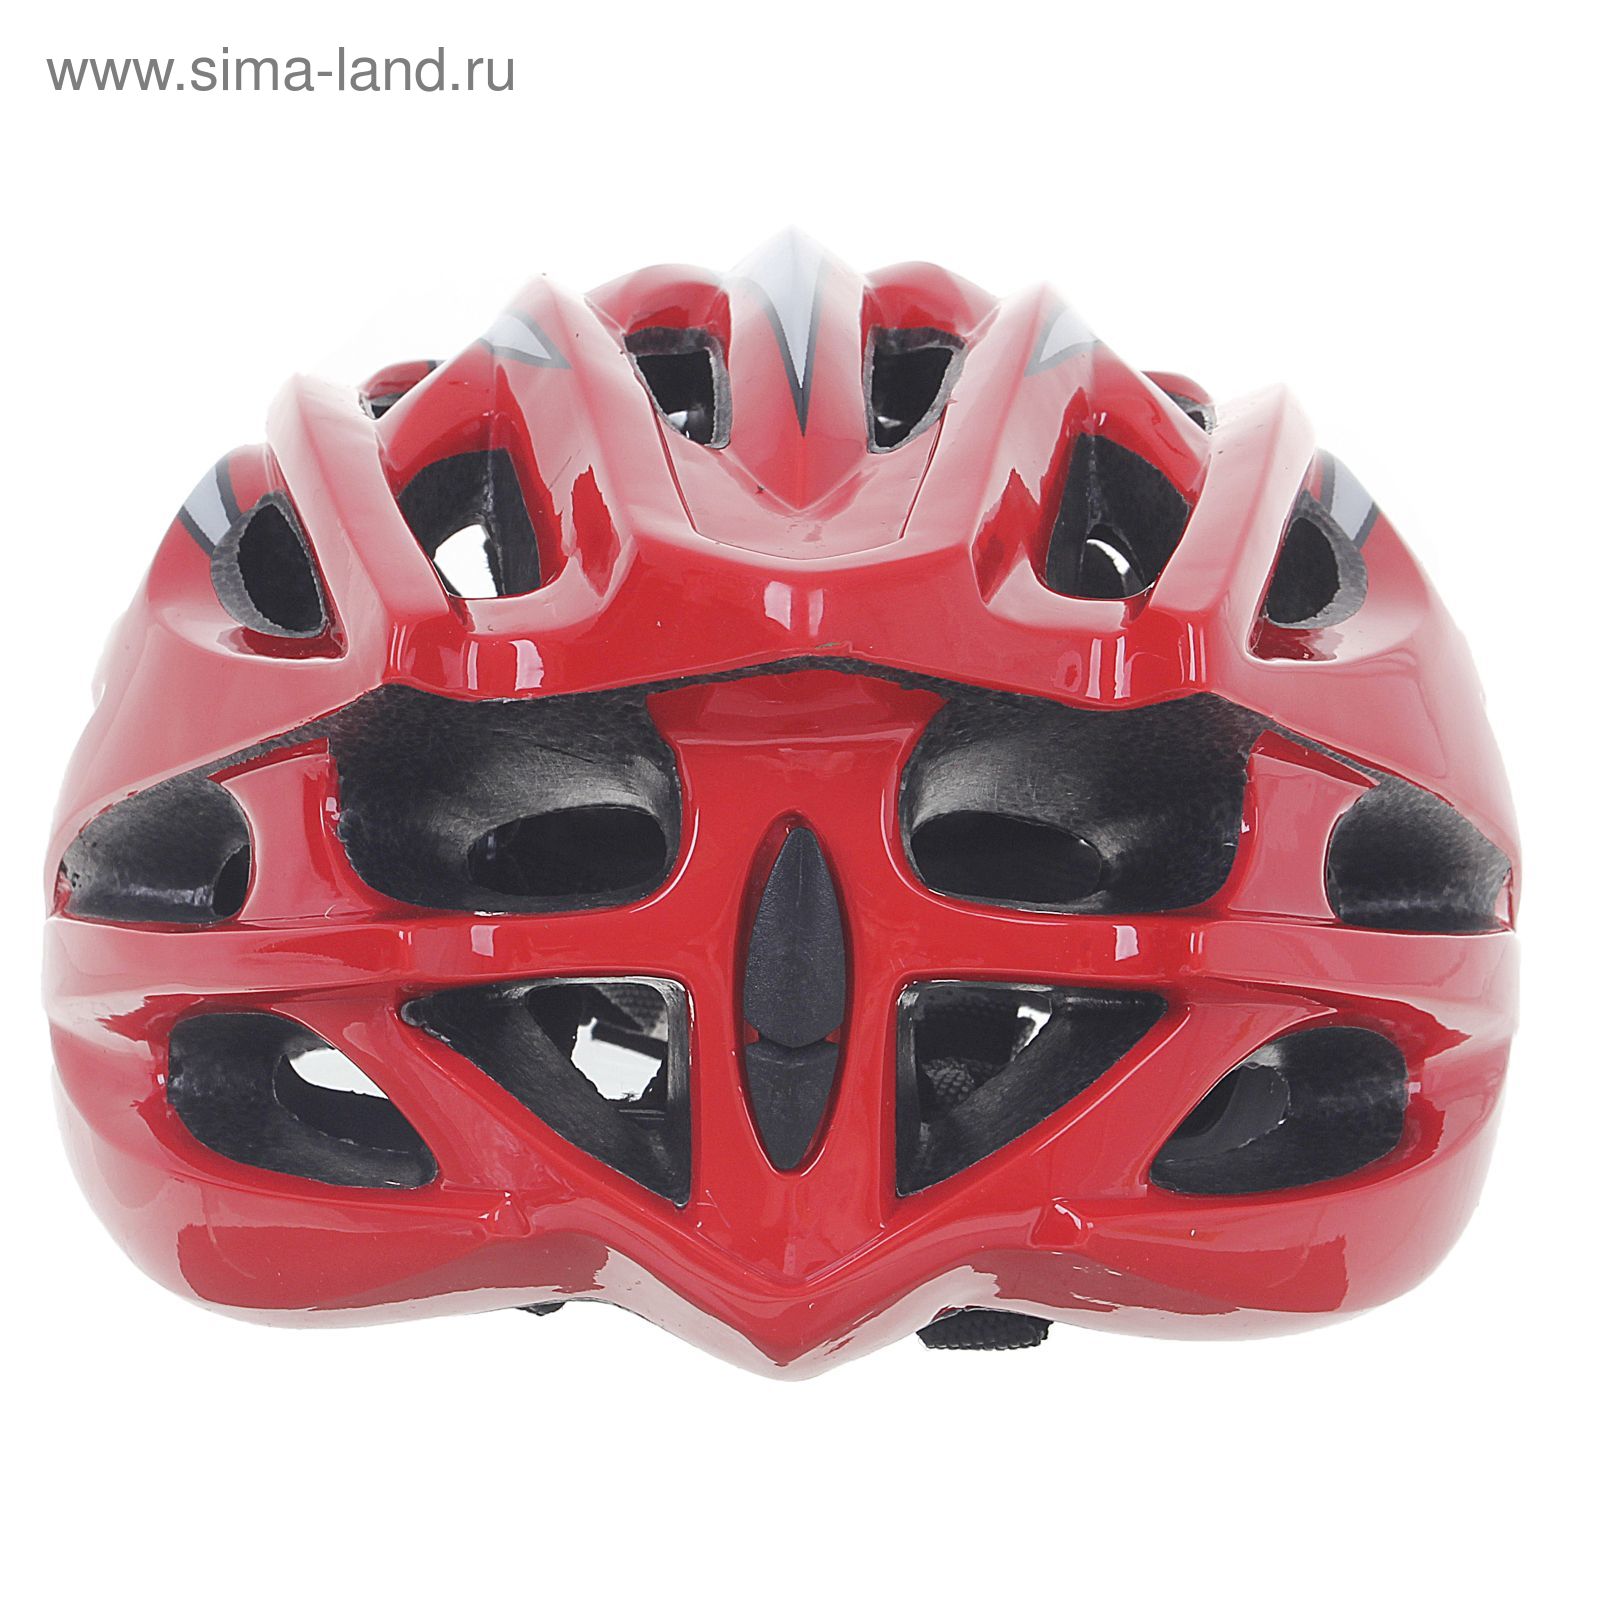 Шлем велосипедиста взрослый ОТ-328, красно-белый, диаметр 54 см